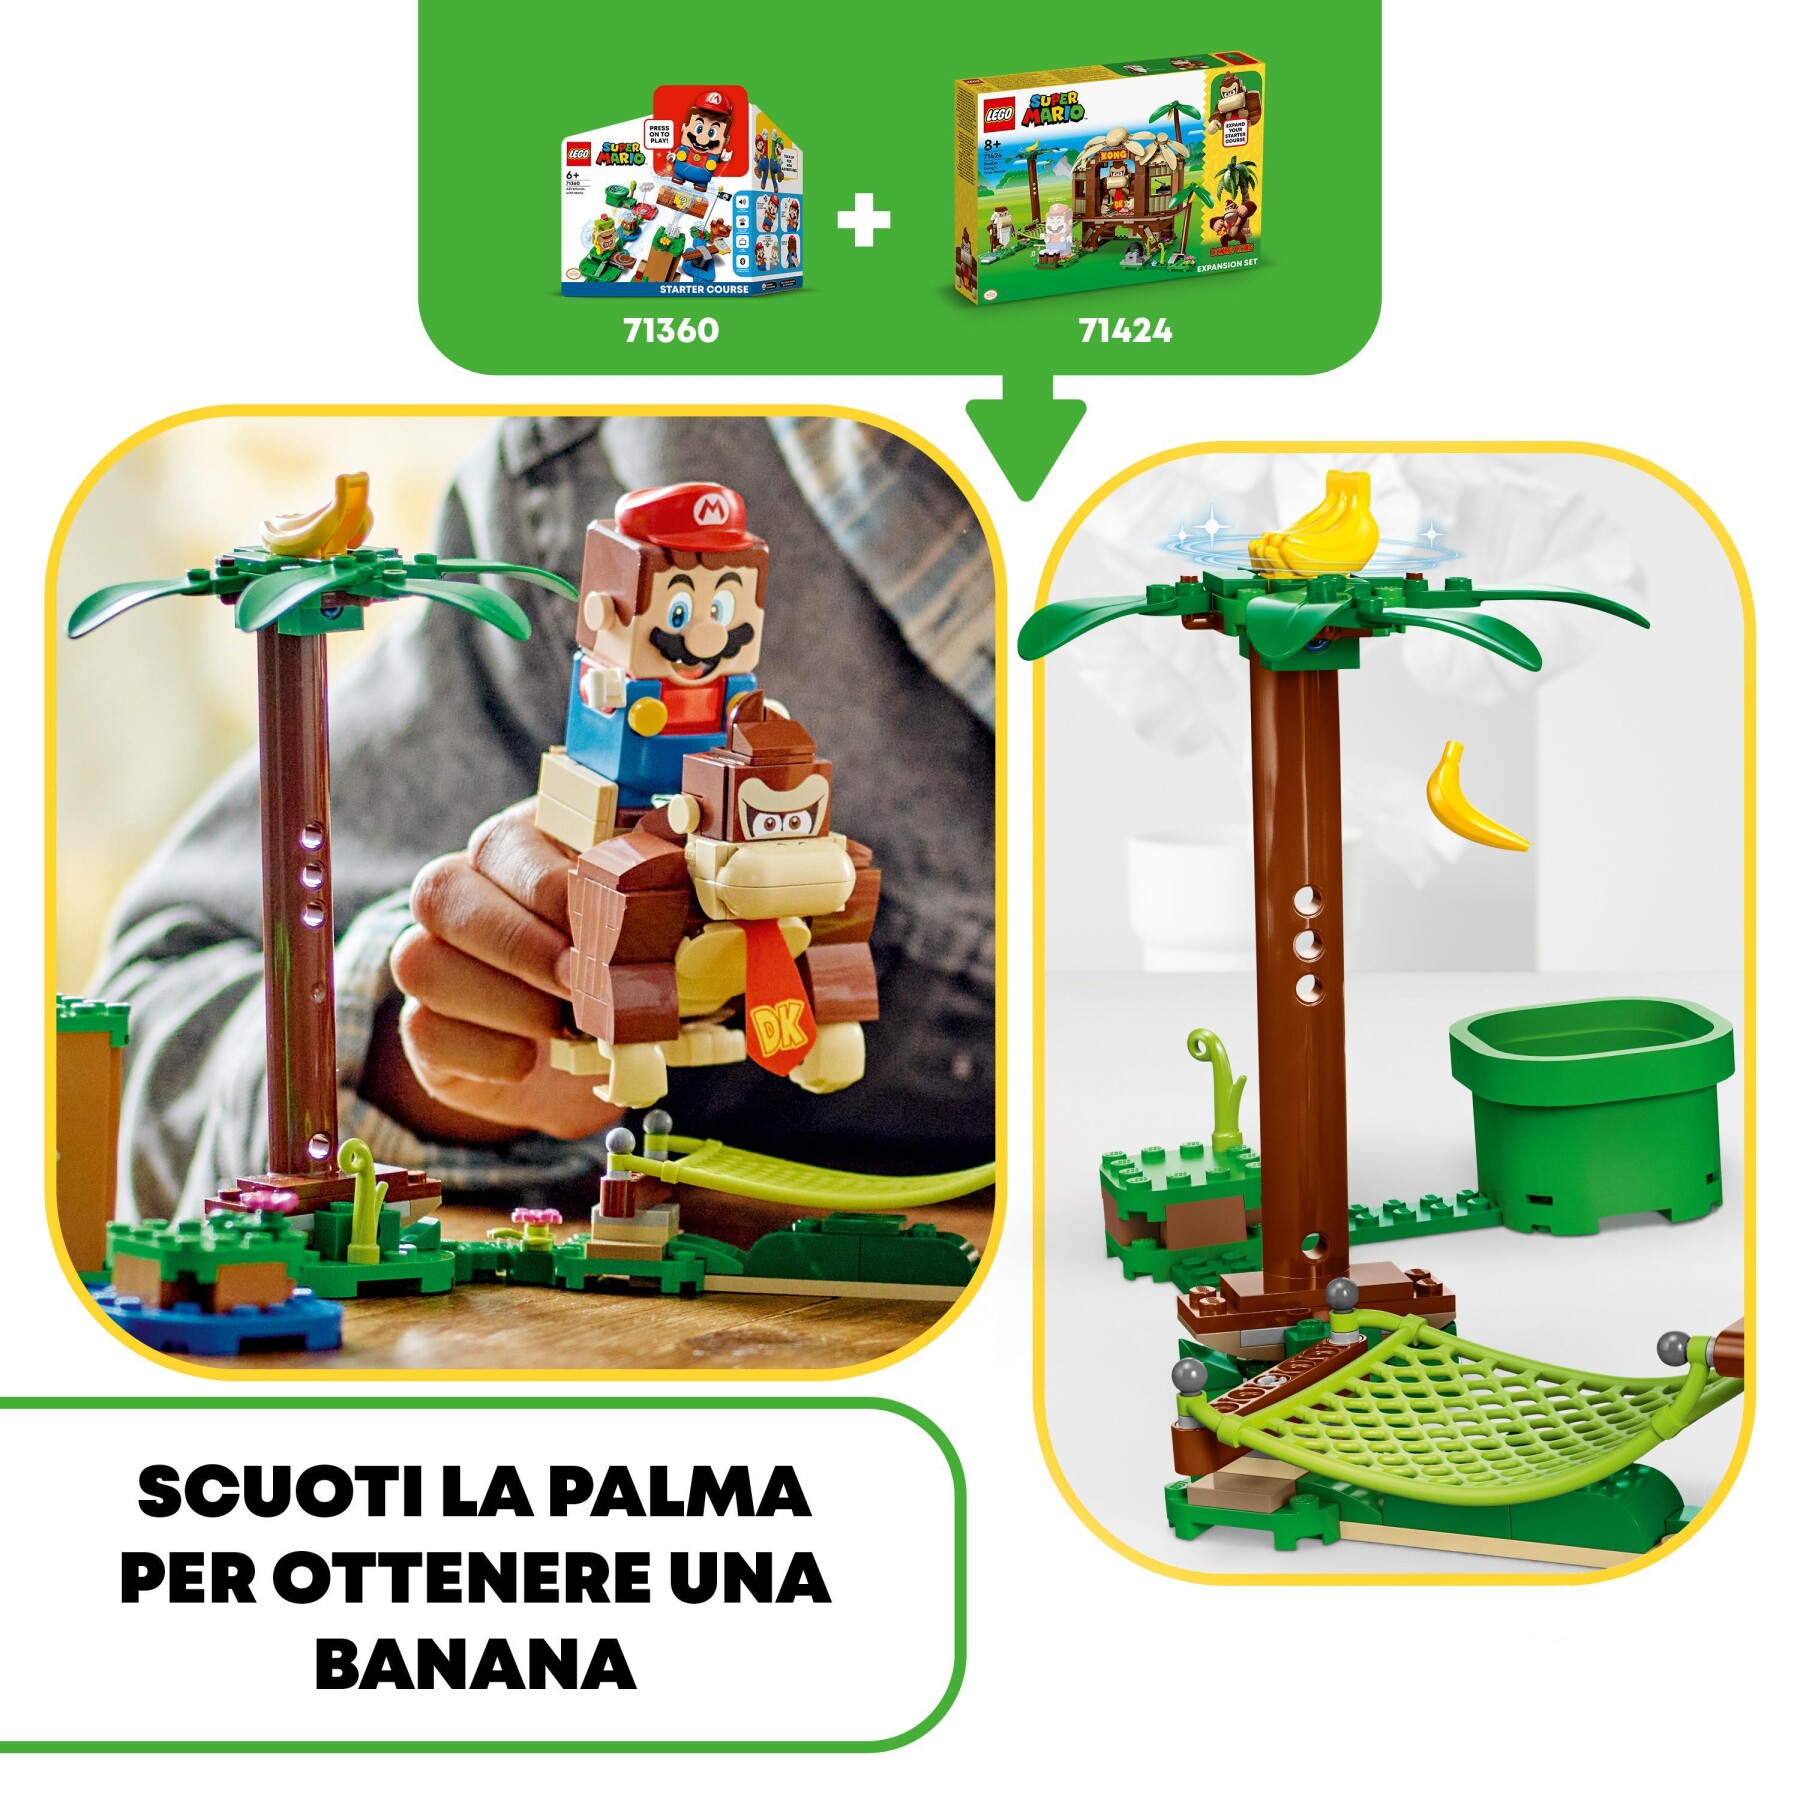 Lego super mario 71424 pack di espansione casa sull'albero di donkey kong, giochi per bambini e bambine 8+ con 2 personaggi - LEGO® Super Mario™, Super Mario